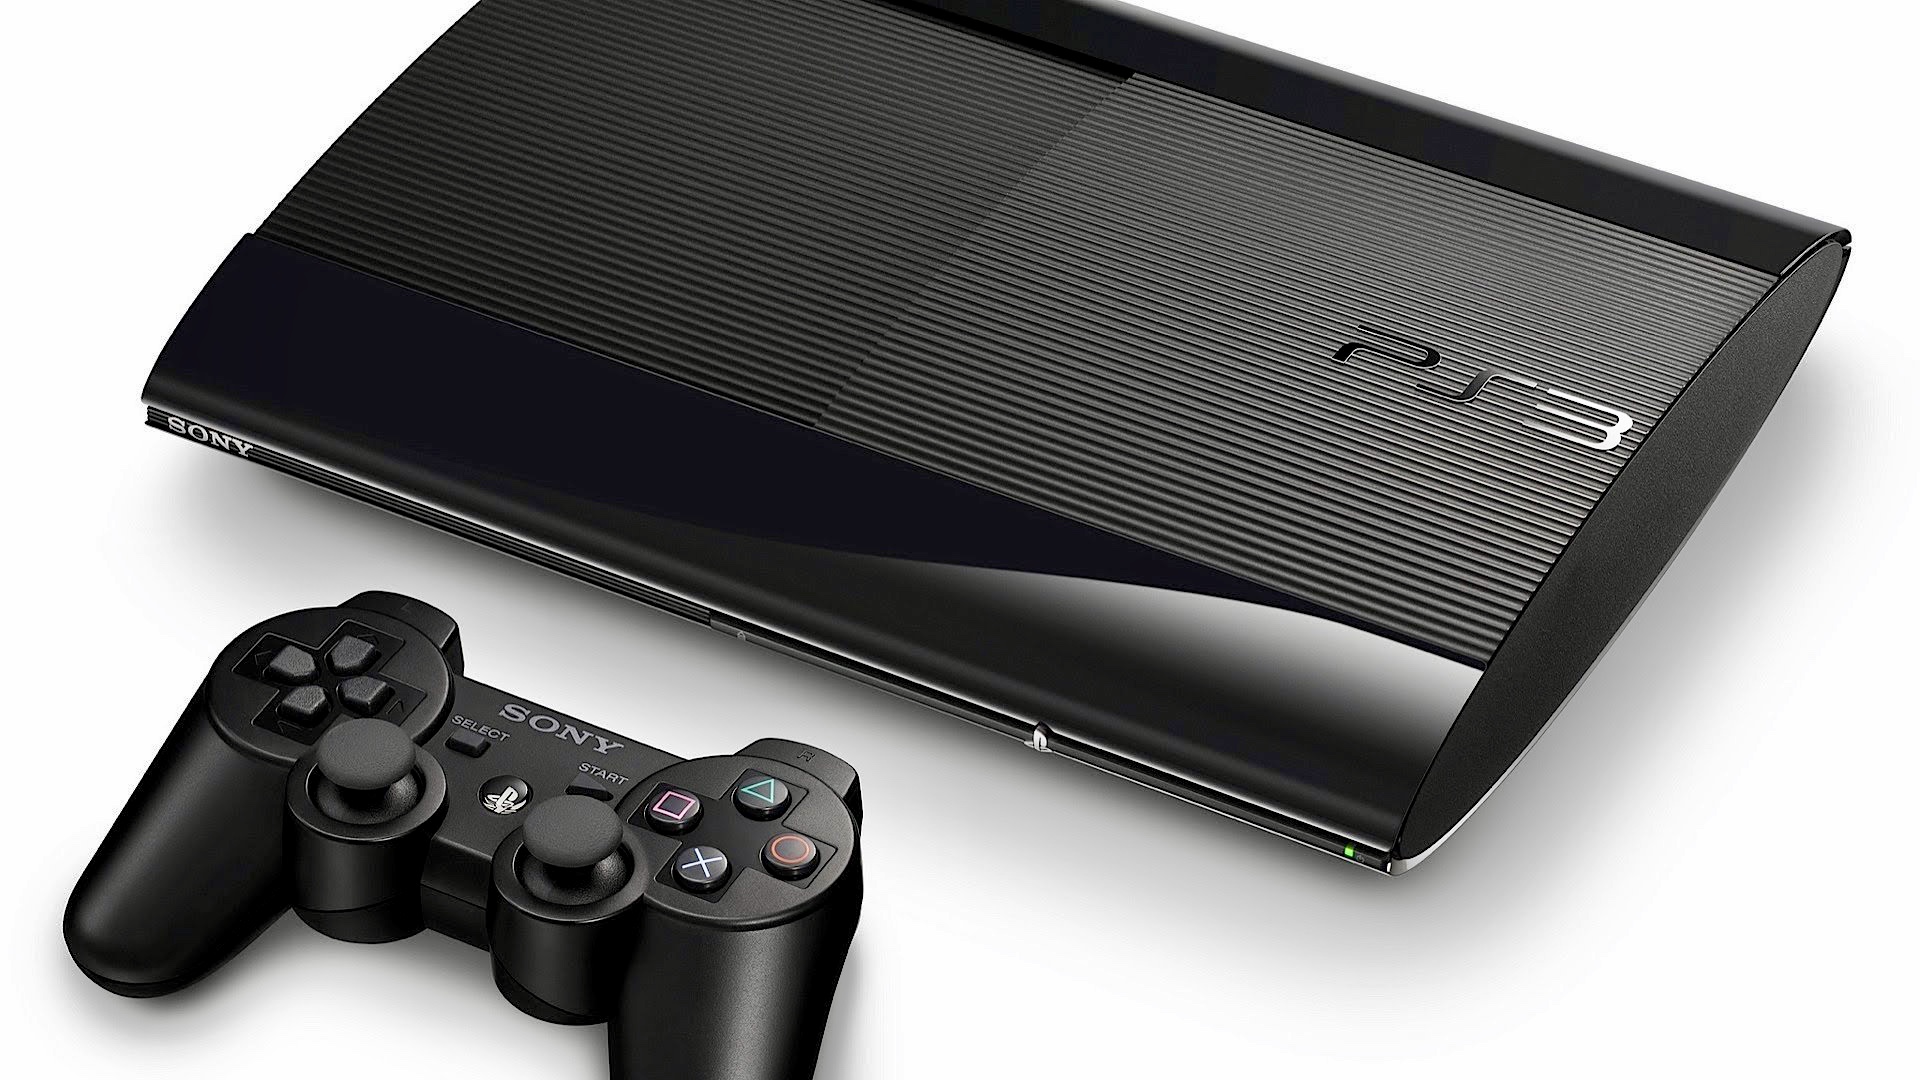 Há chances do PS5 ter retrocompatibilidade com outros consoles da Sony